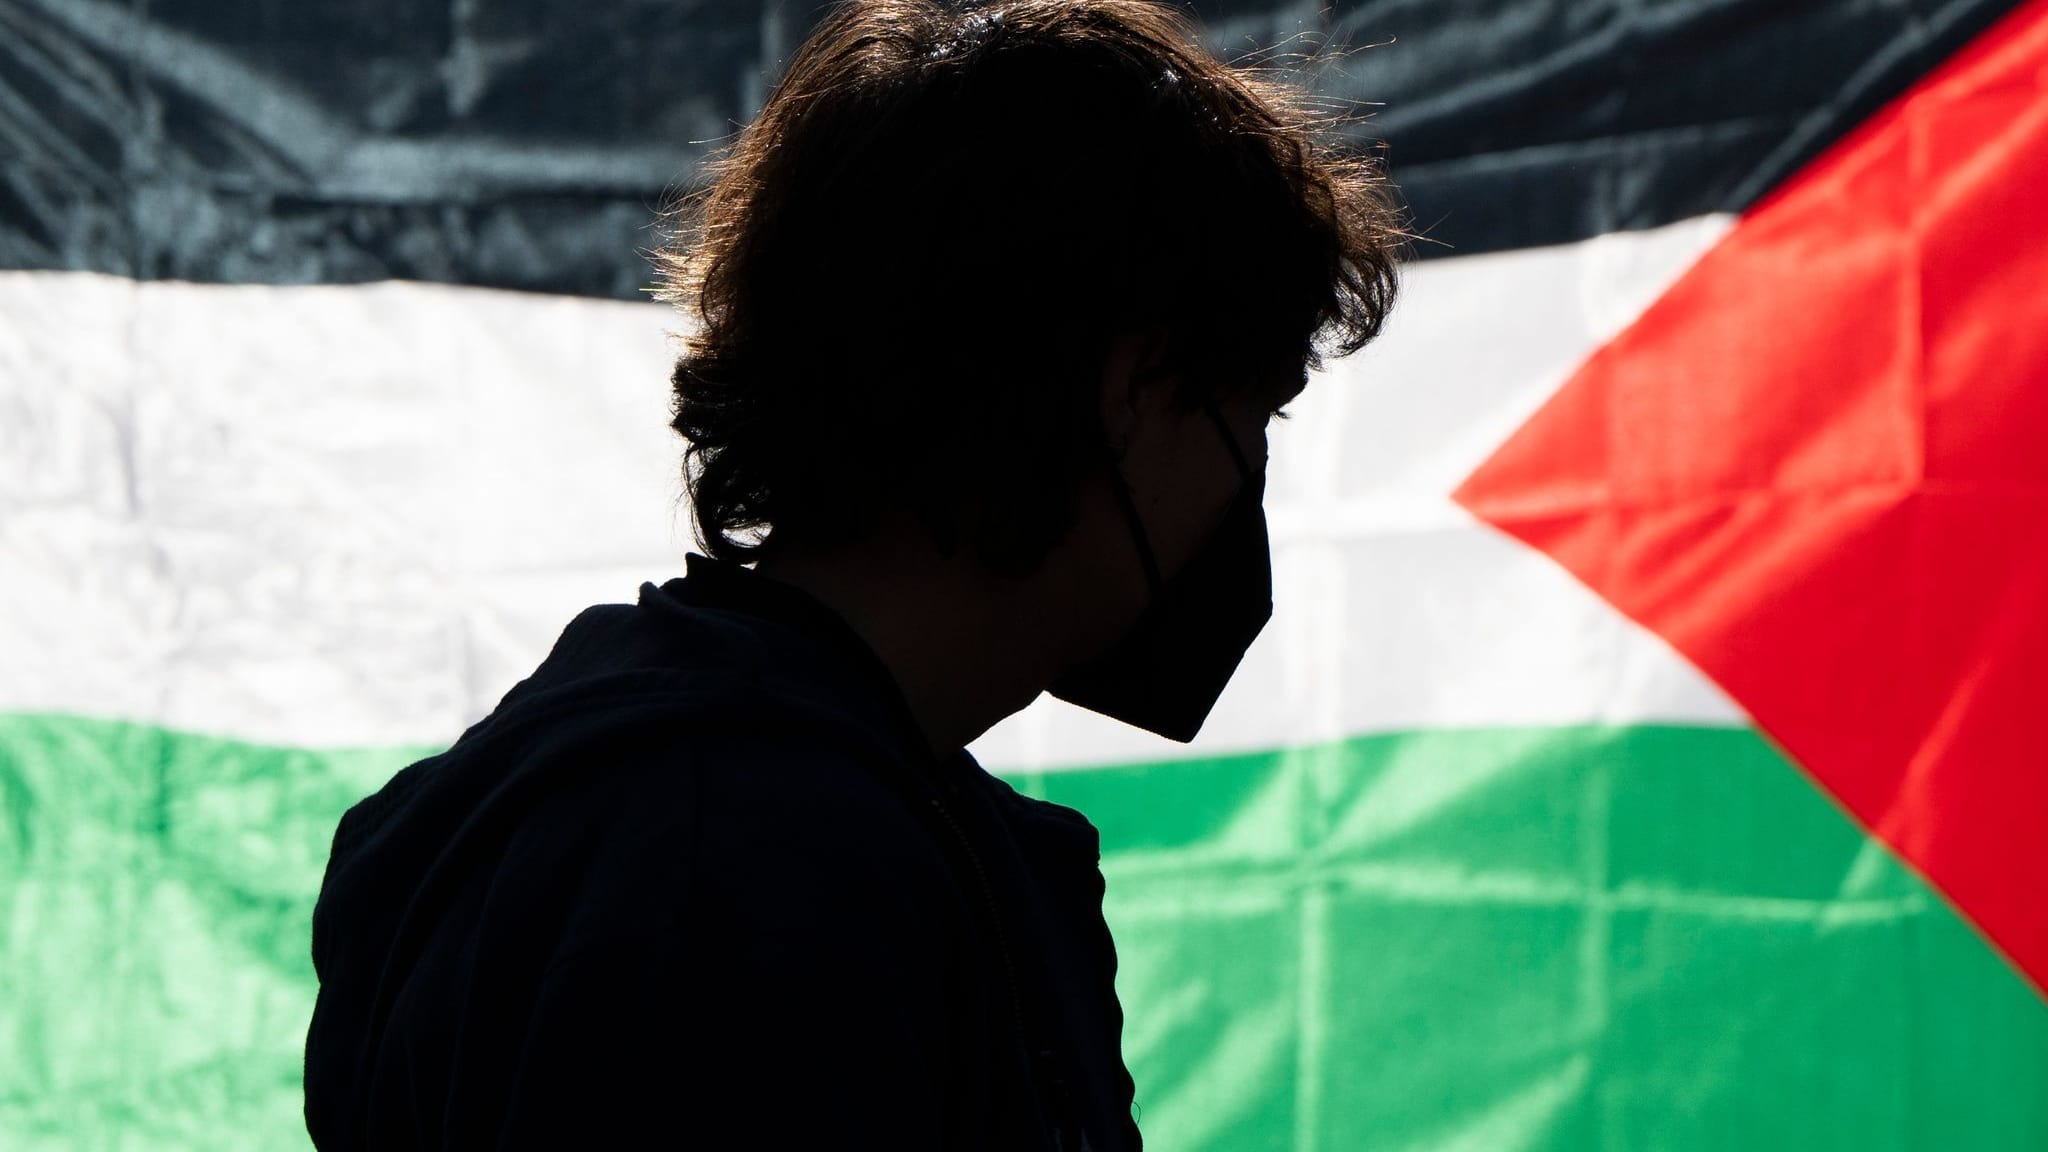 Pro-Palästina-Proteste in den USA: Uni-Gebäude besetzt